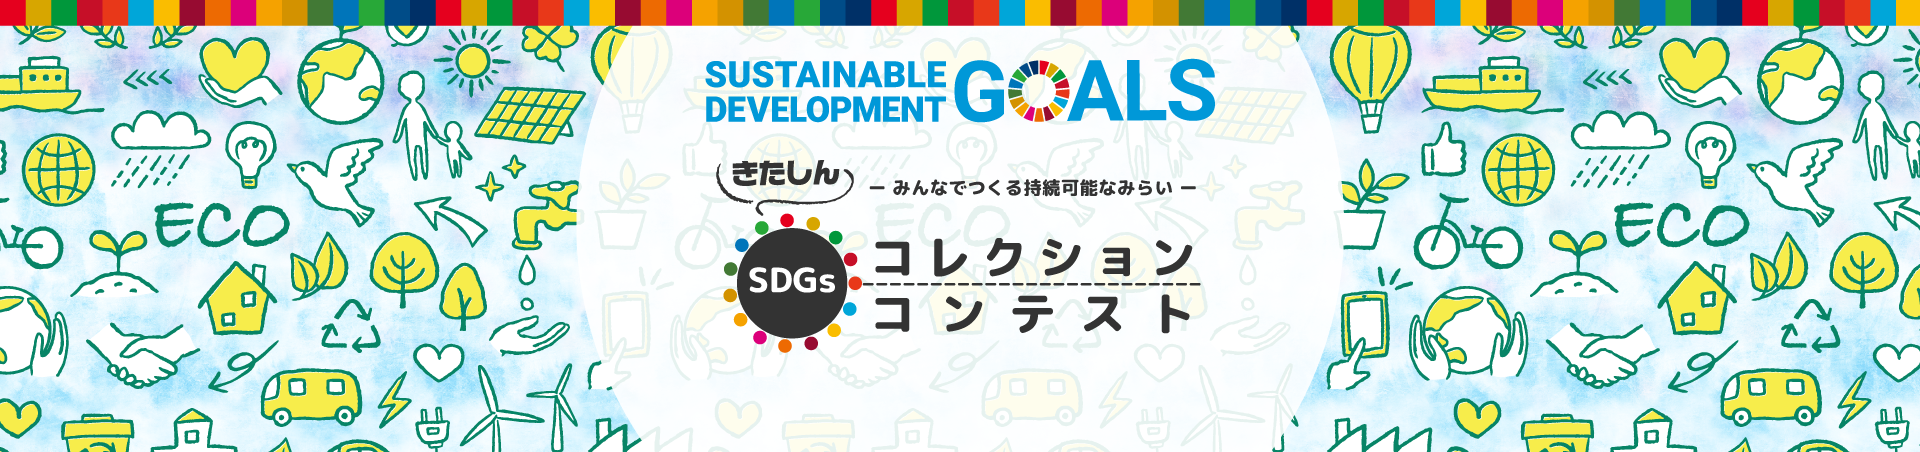 きたしんSDGsコレクション・SDGsコンテスト